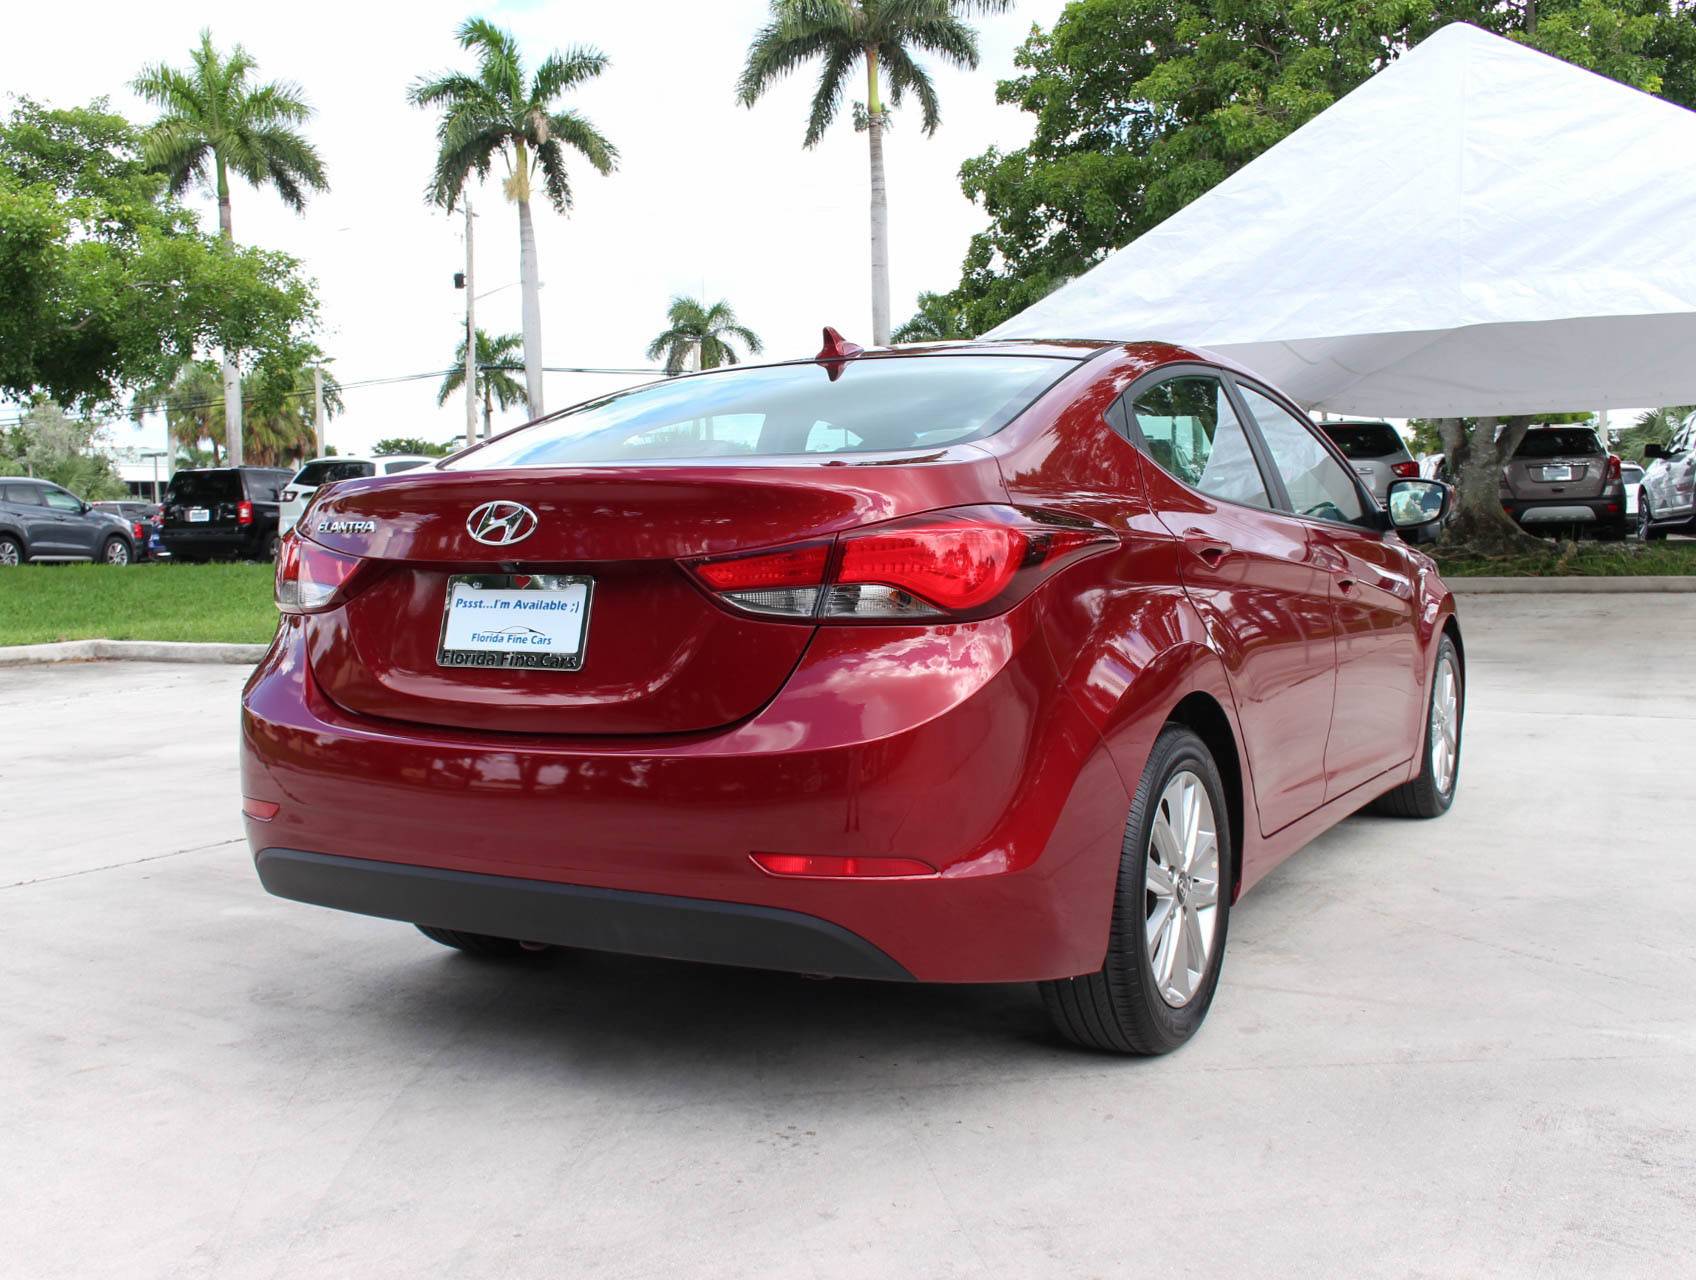 Florida Fine Cars - Used HYUNDAI ELANTRA 2015 MARGATE Se